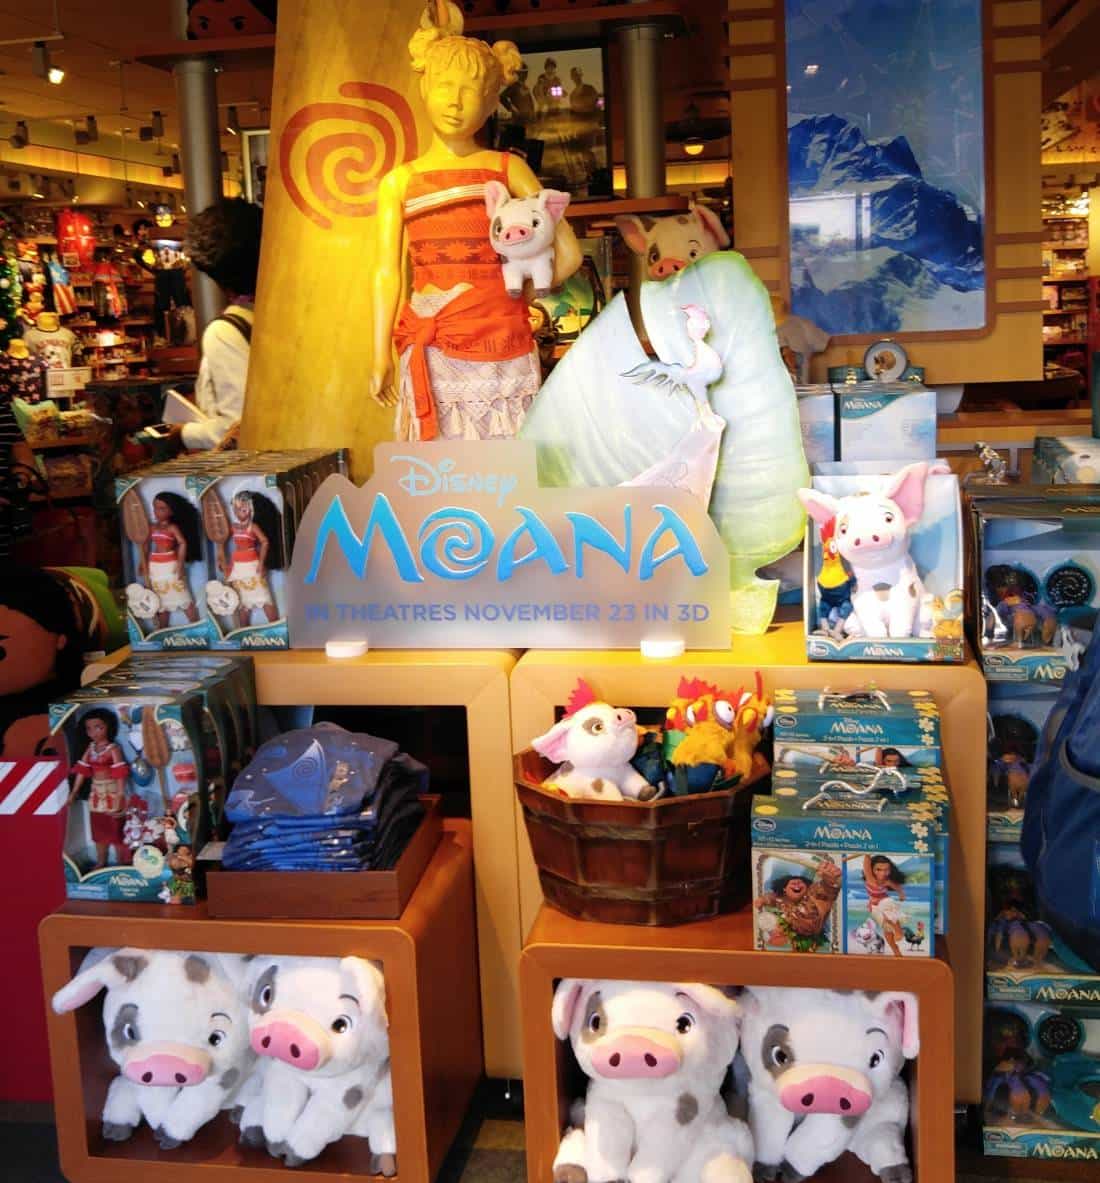 Disney Moana Gifts For The Holidays #moanaevent #moana